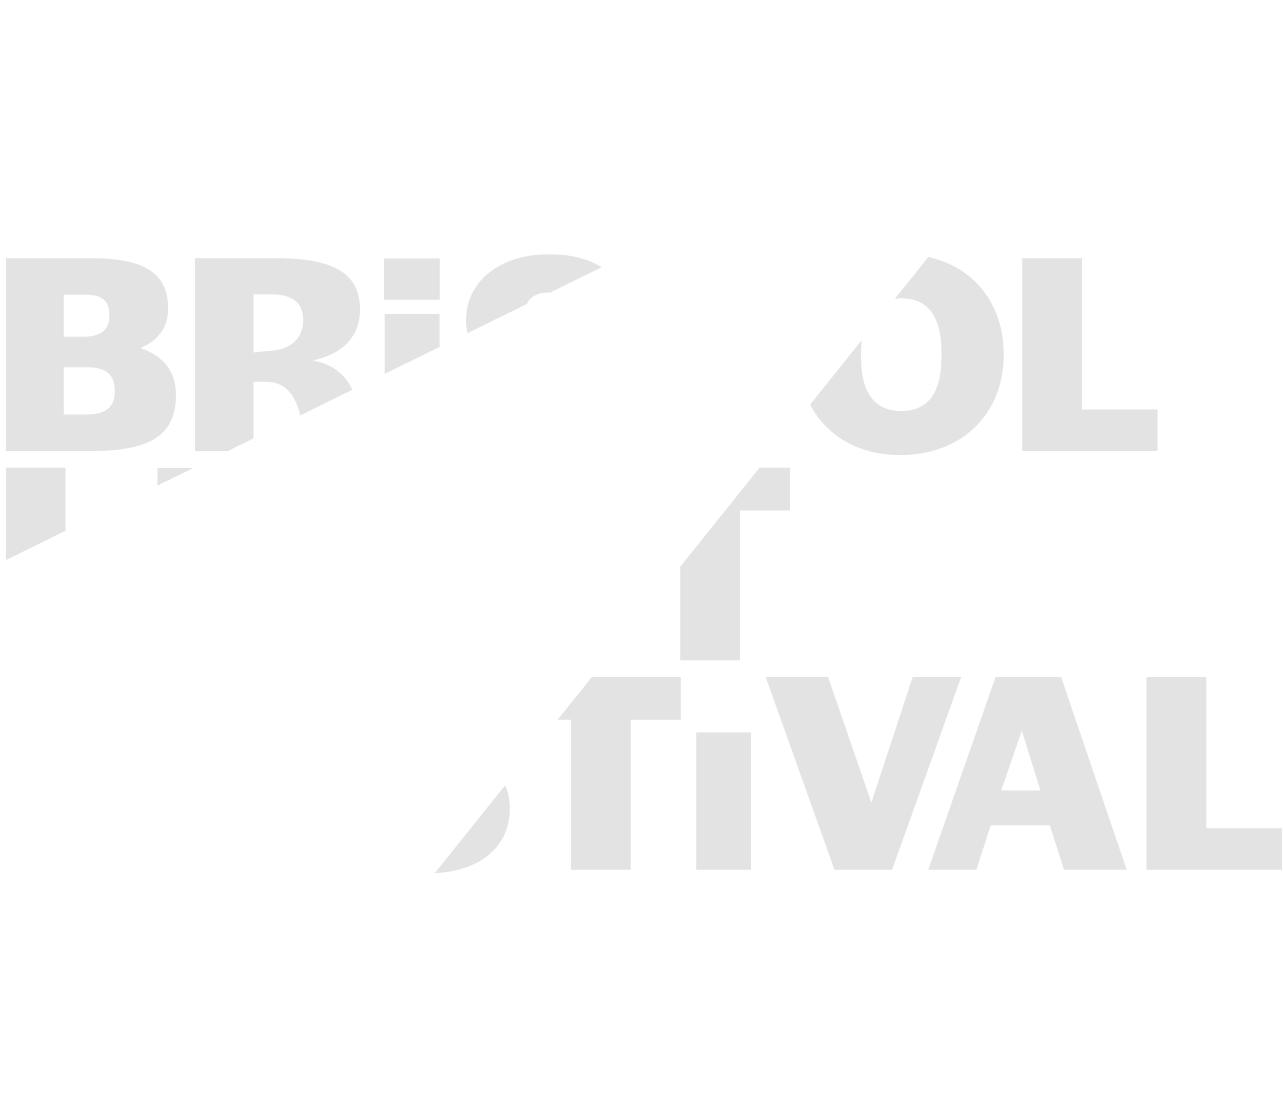 Bristol Light Festival Brand